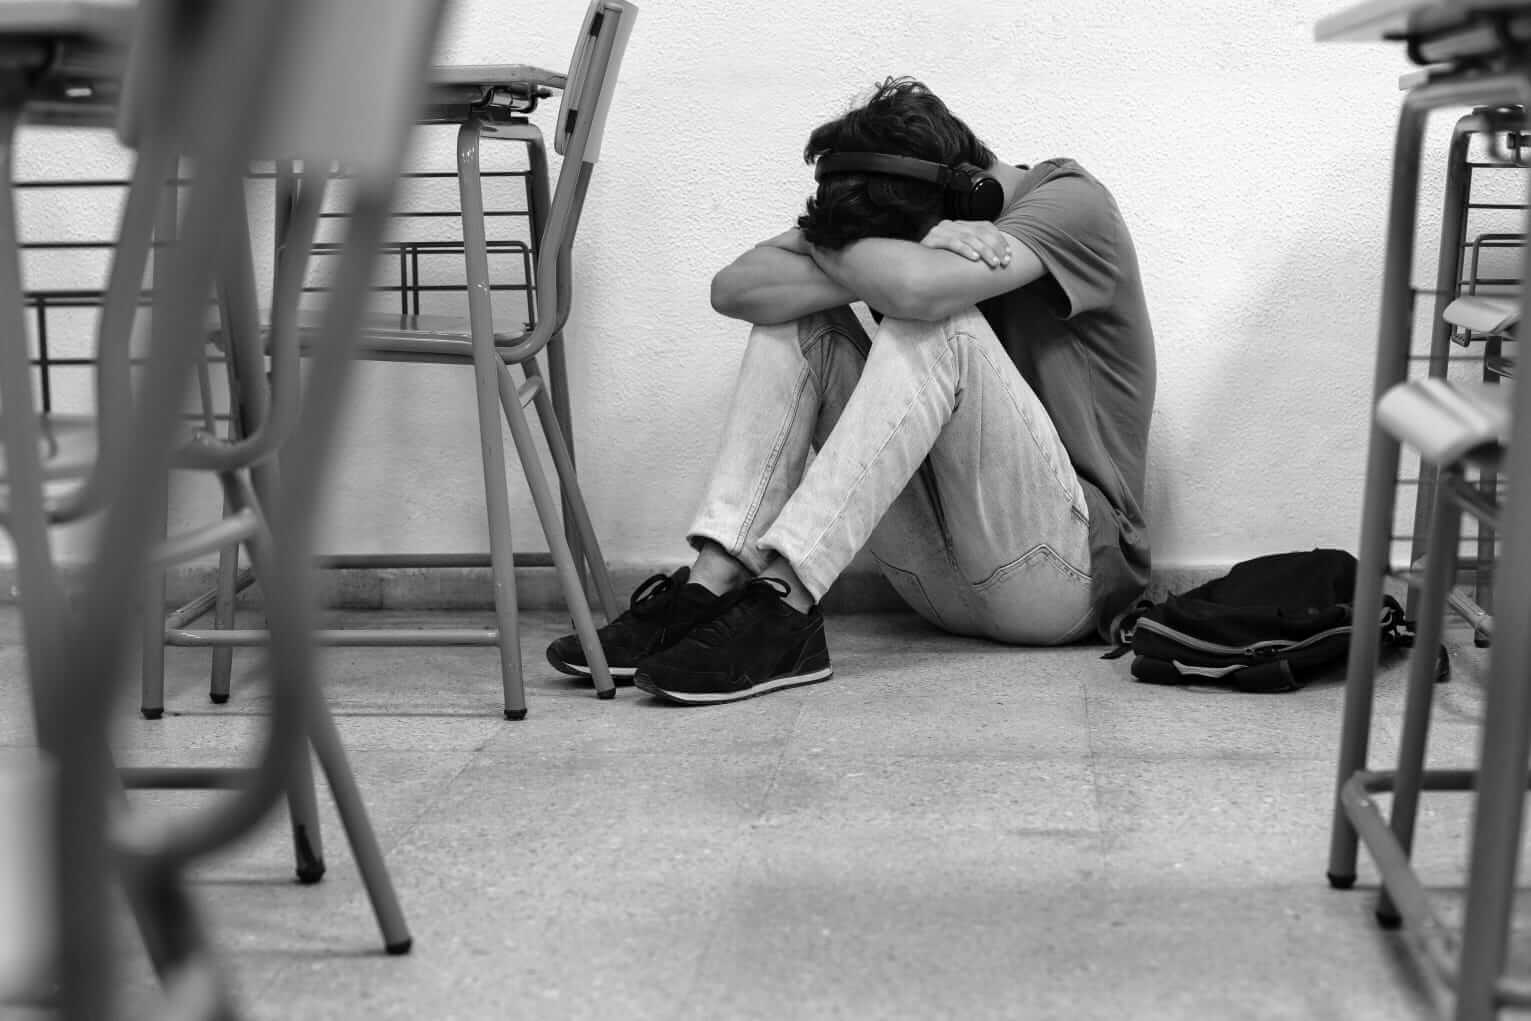 Prevención del bullying y suicidio  se fortalece en escuelas y colegios